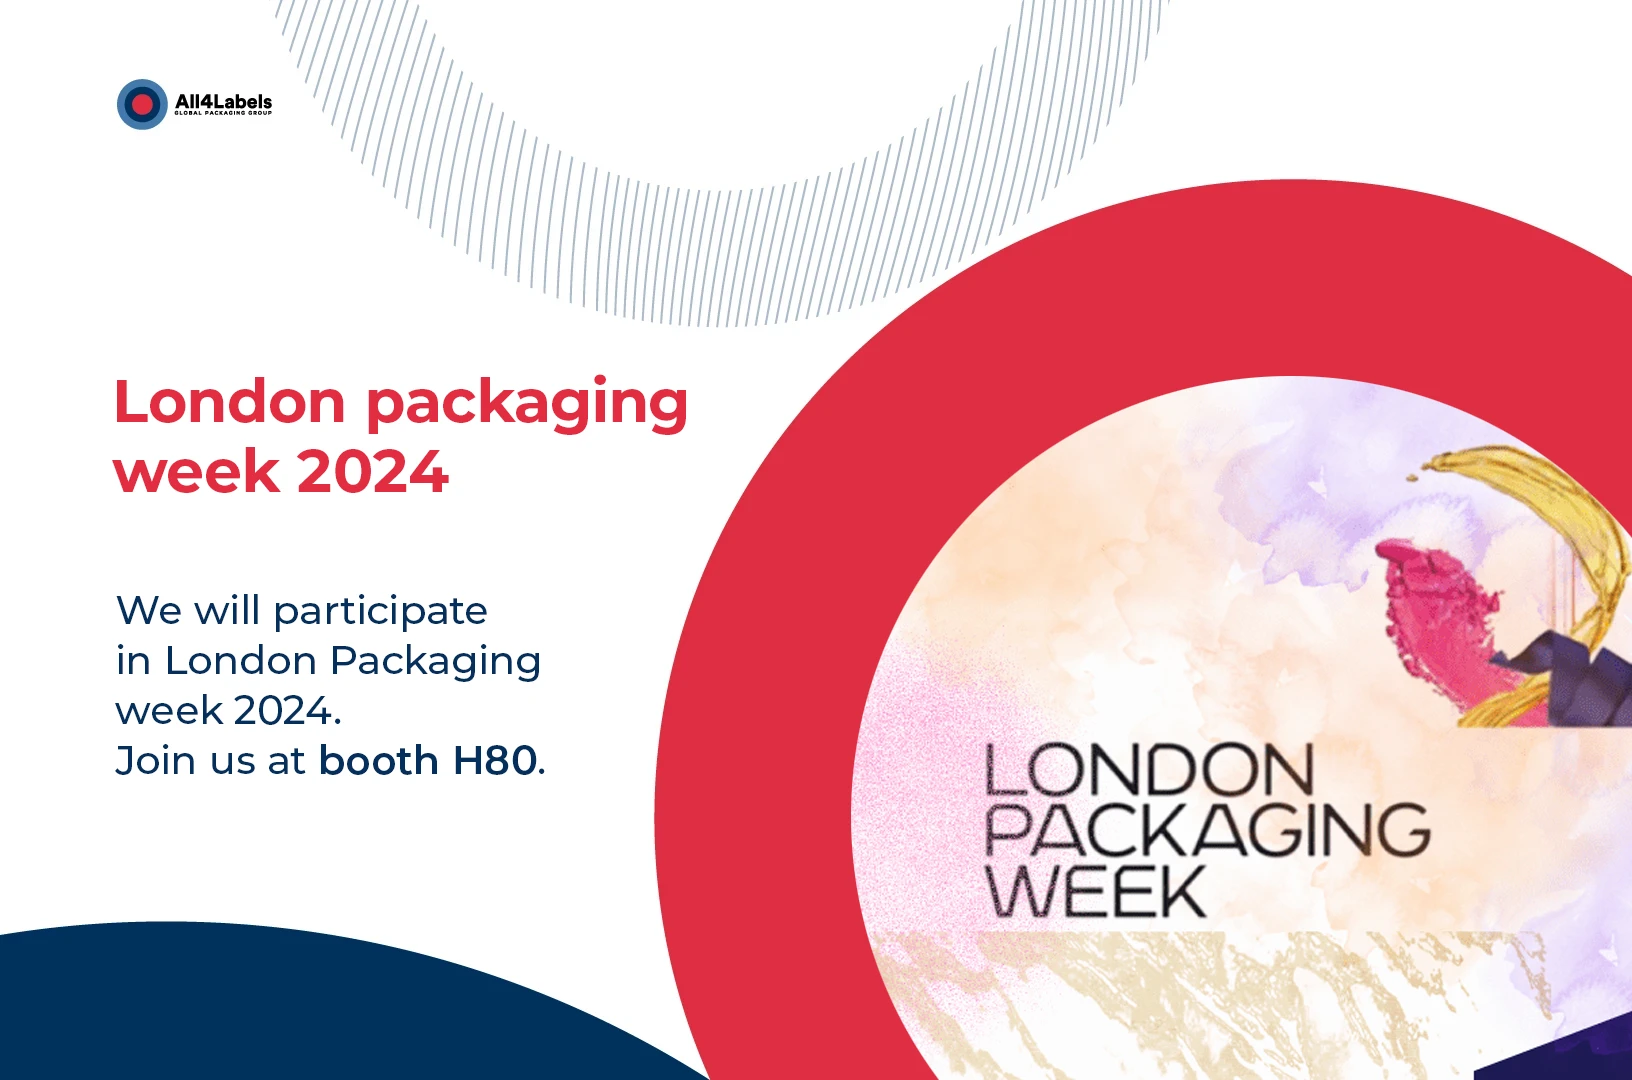 londono packaging week 2024 event